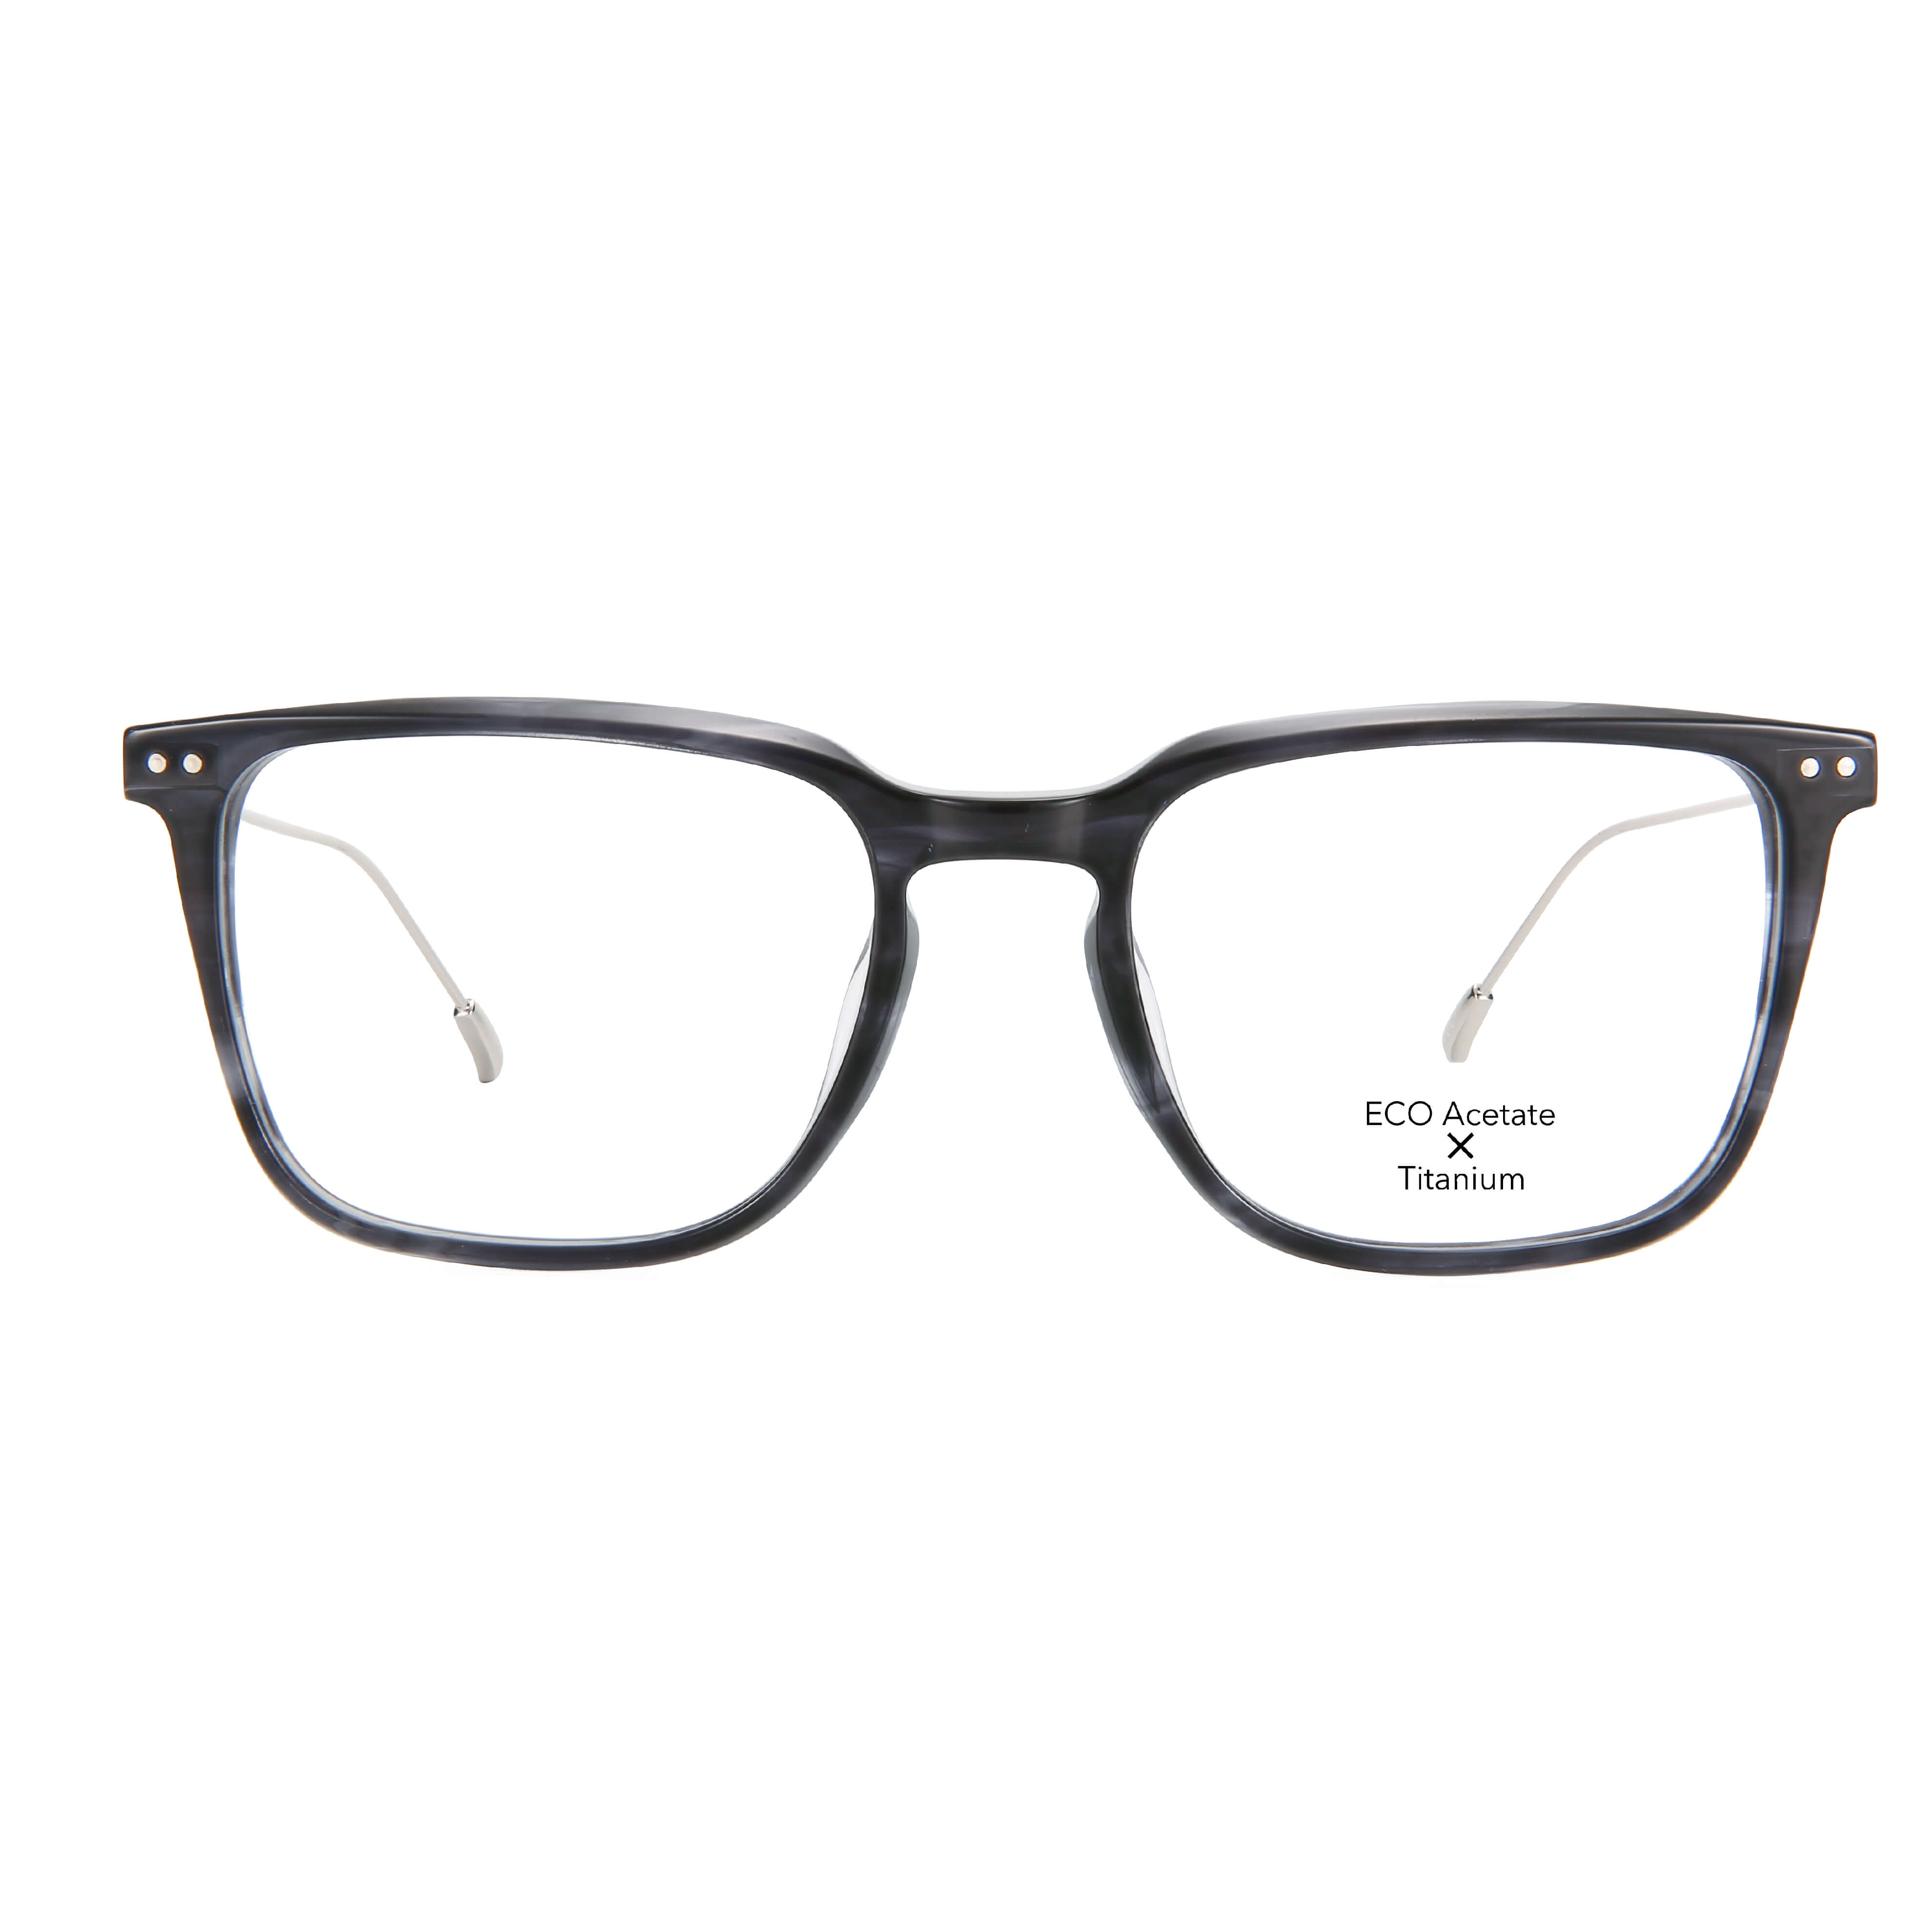 Square Acetate & Titanium Optical Frame - Eco Friendly & Sustainable Eyewear